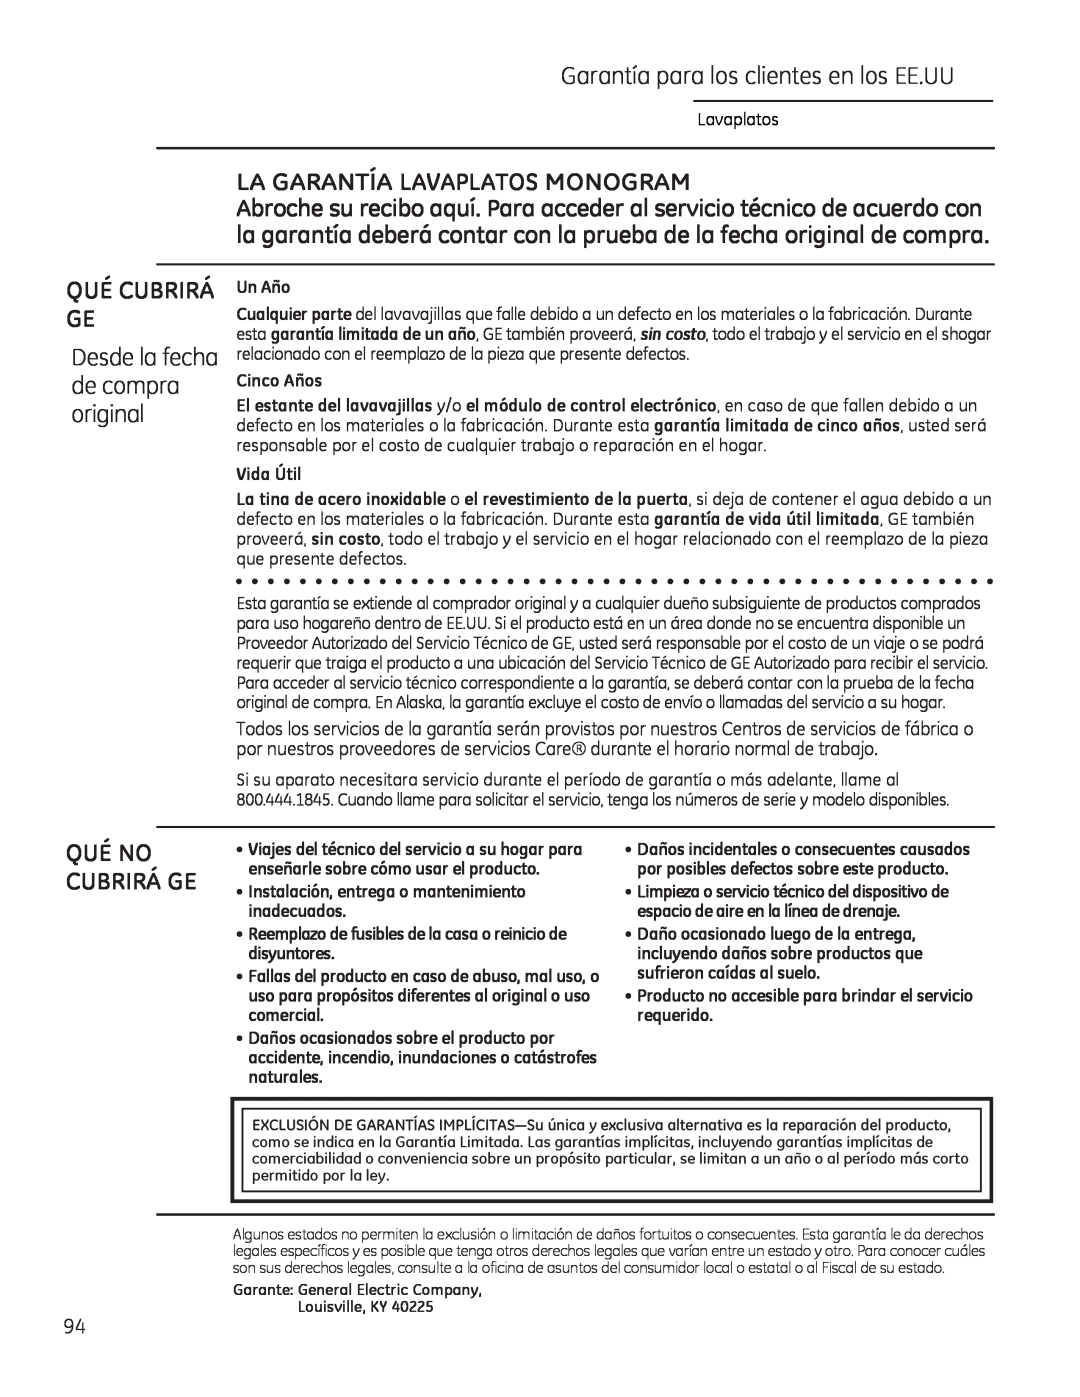 GE Monogram 49-55086 La Garantía Lavaplatos Monogram, Qué Cubrirá, Desde la fecha, Un Año, Cinco Años, Vida Útil 